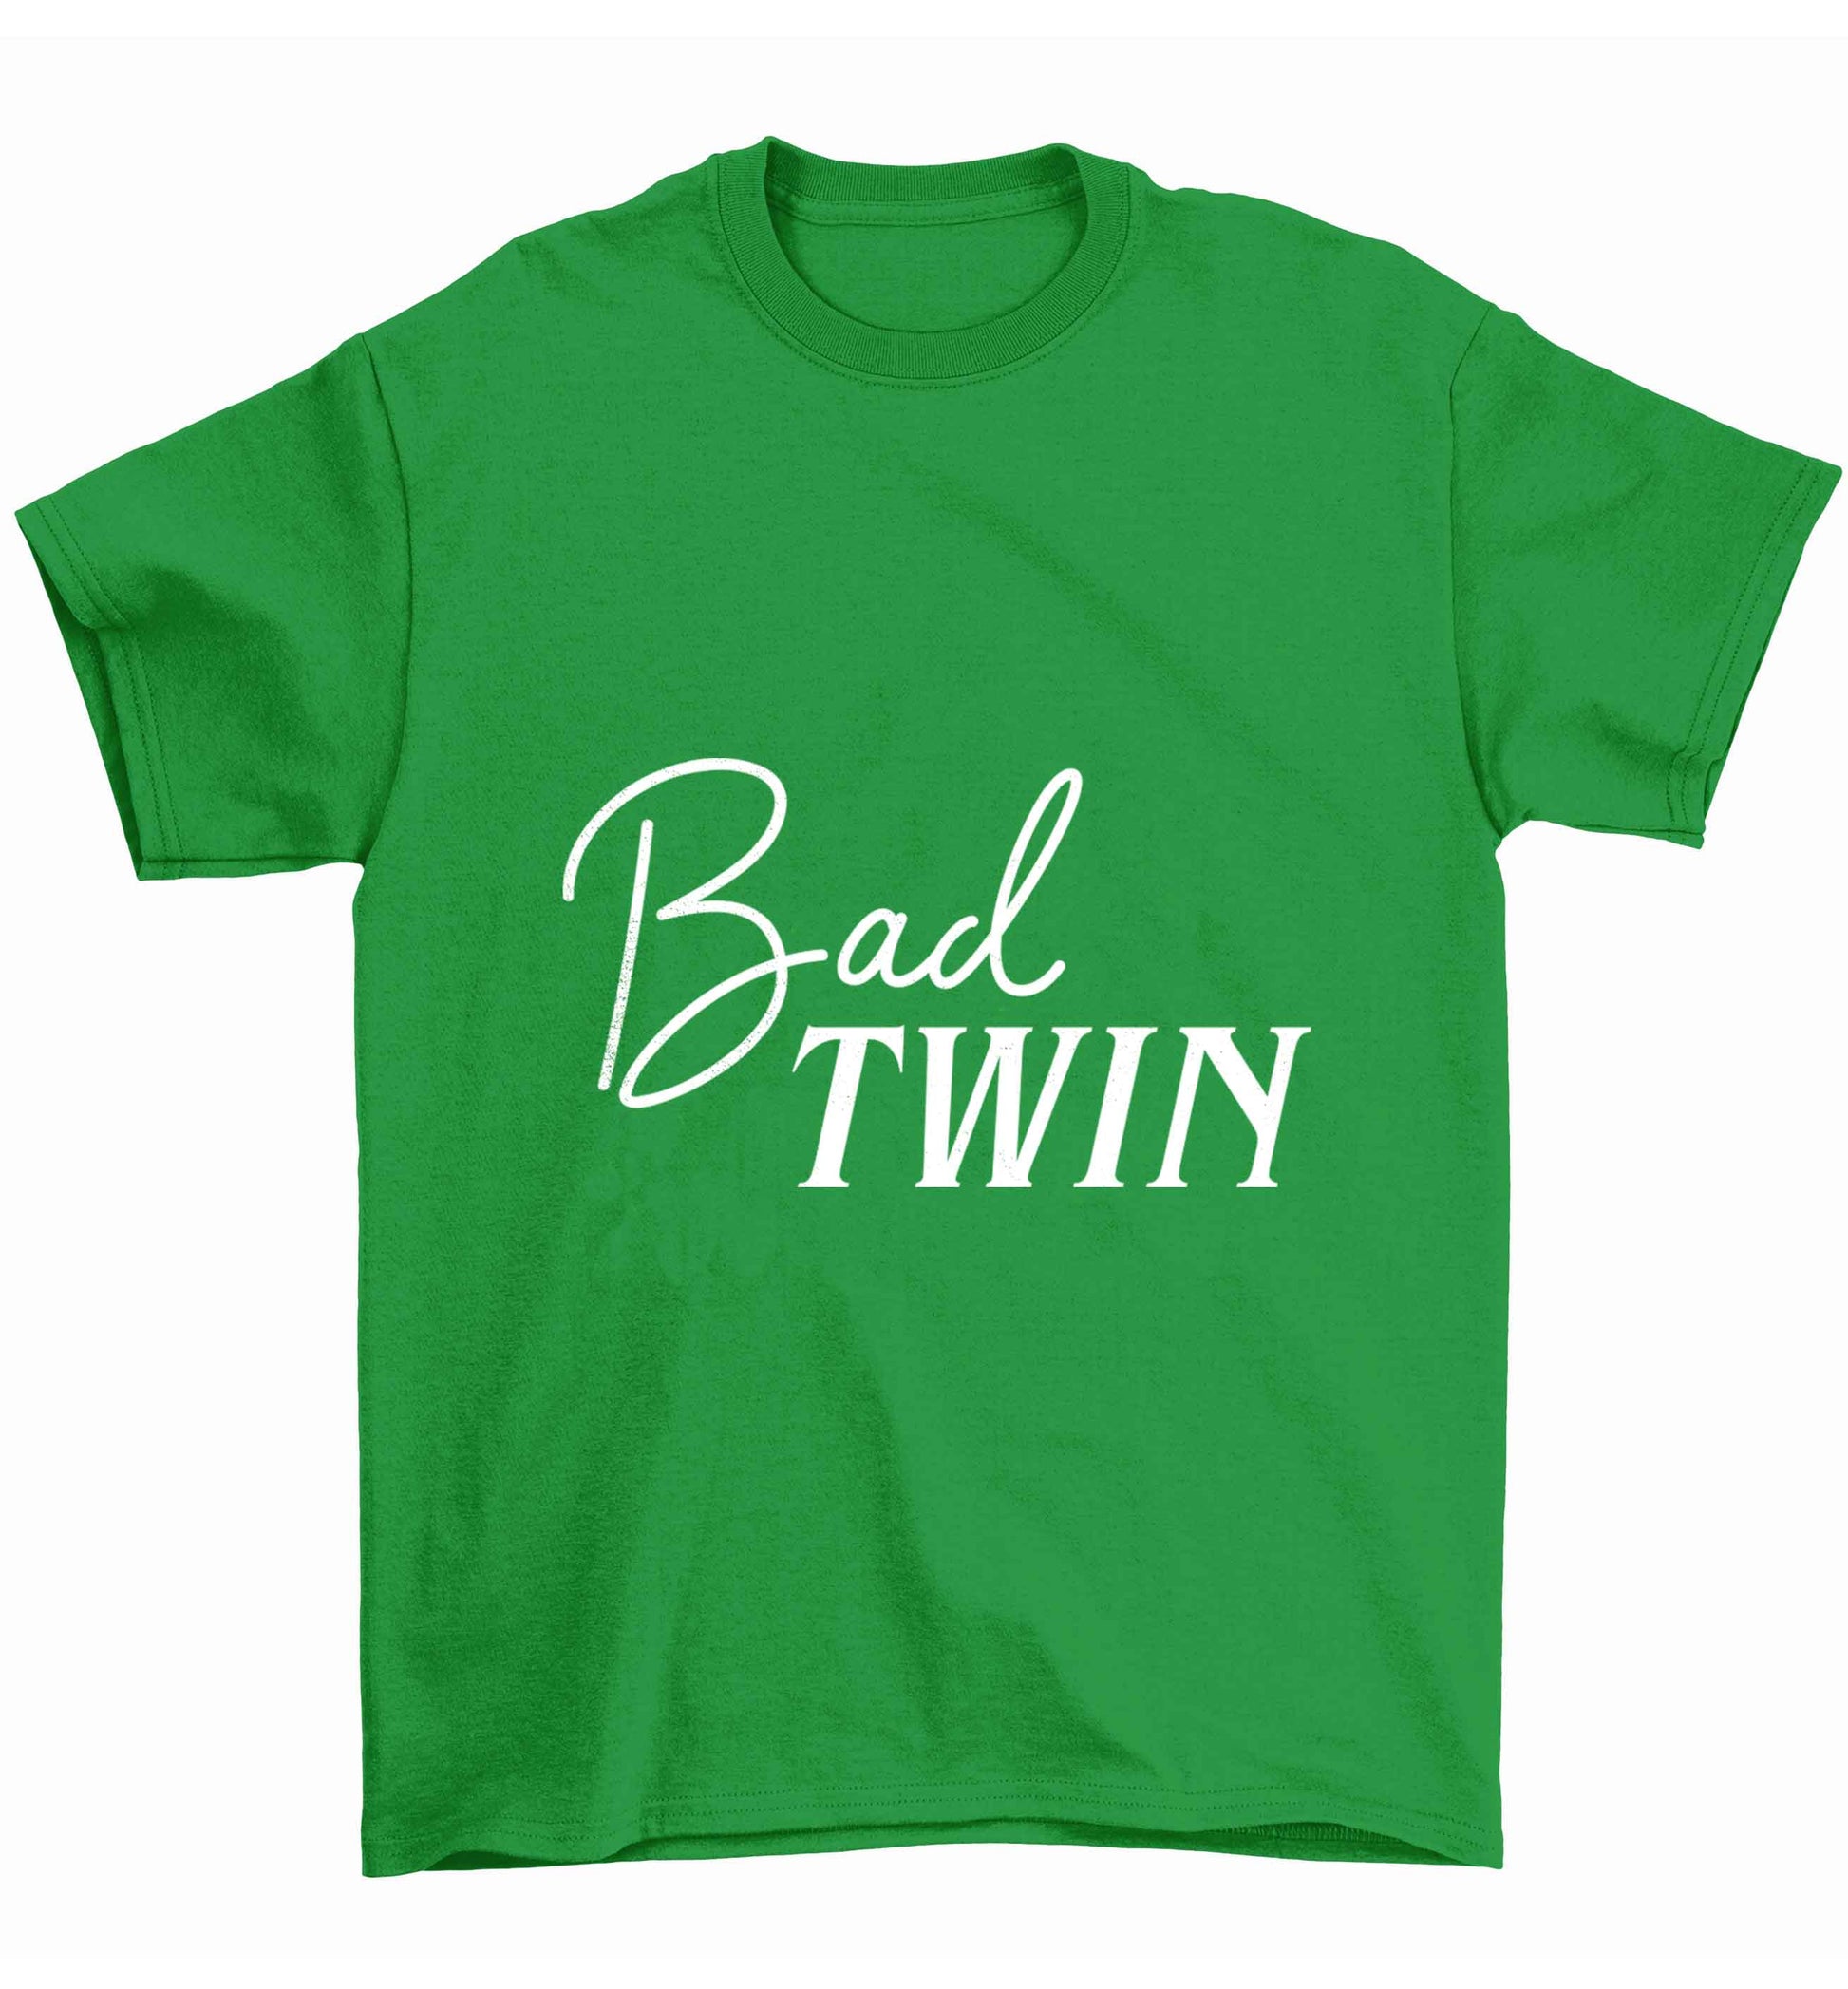 Bad twin Children's green Tshirt 12-13 Years